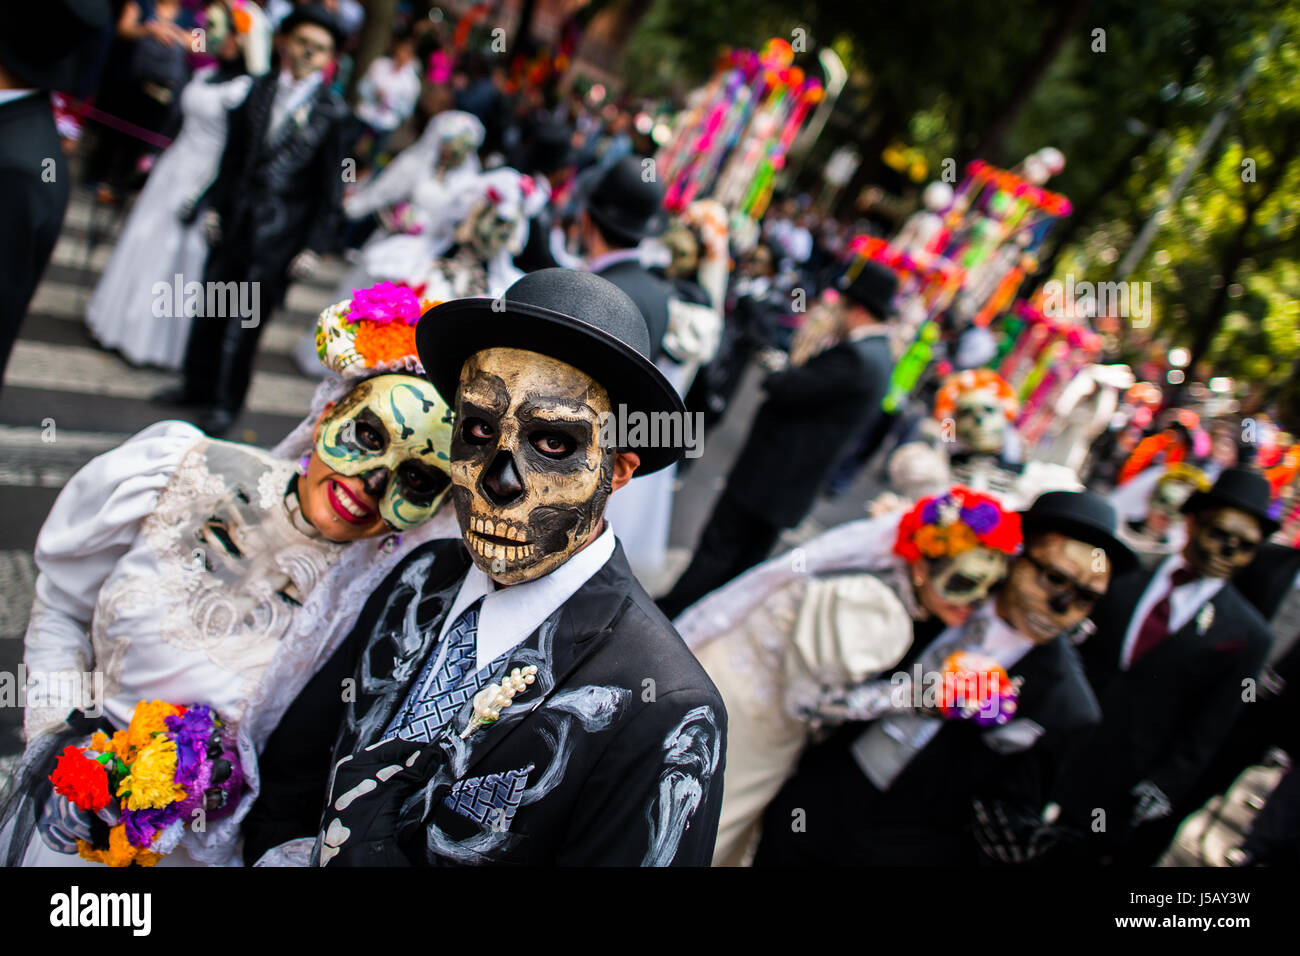 Las parejas jóvenes, las murgas como La Catrina, paseo por la ciudad durante las festividades del Día de los muertos en la Ciudad de México, México. Foto de stock